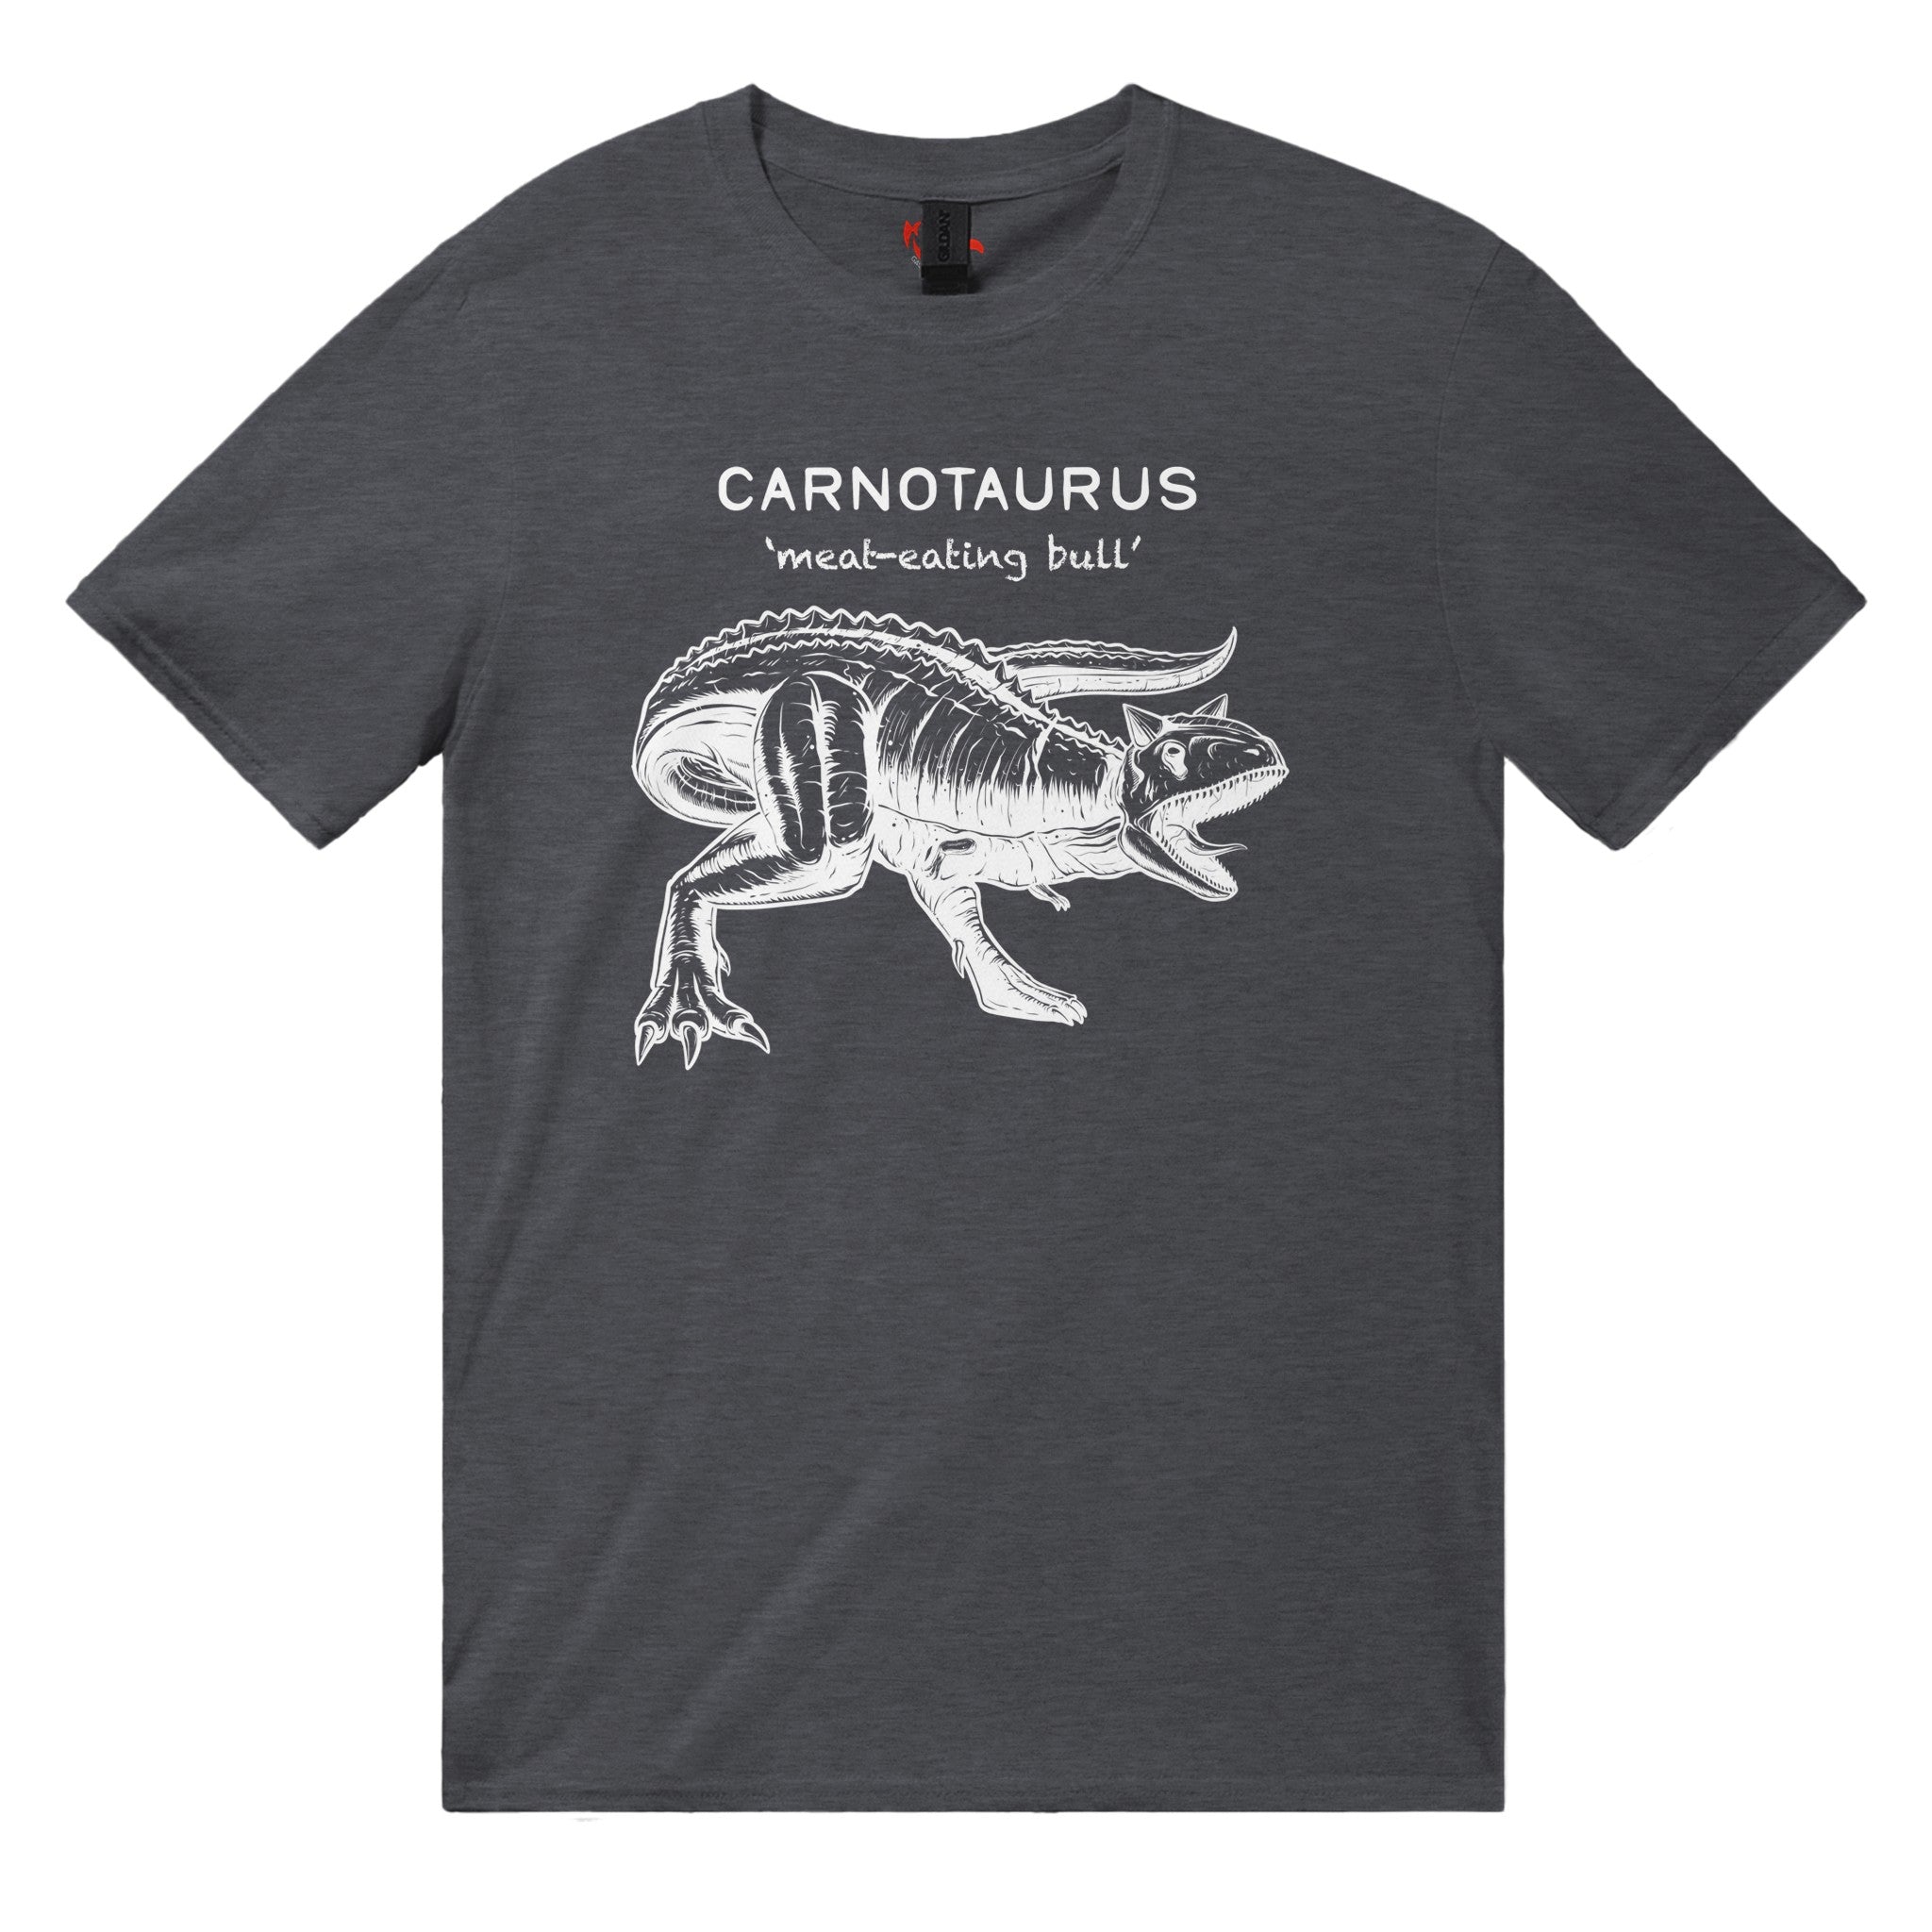 Carnotaurus Dinosaur Unisex T-Shirt